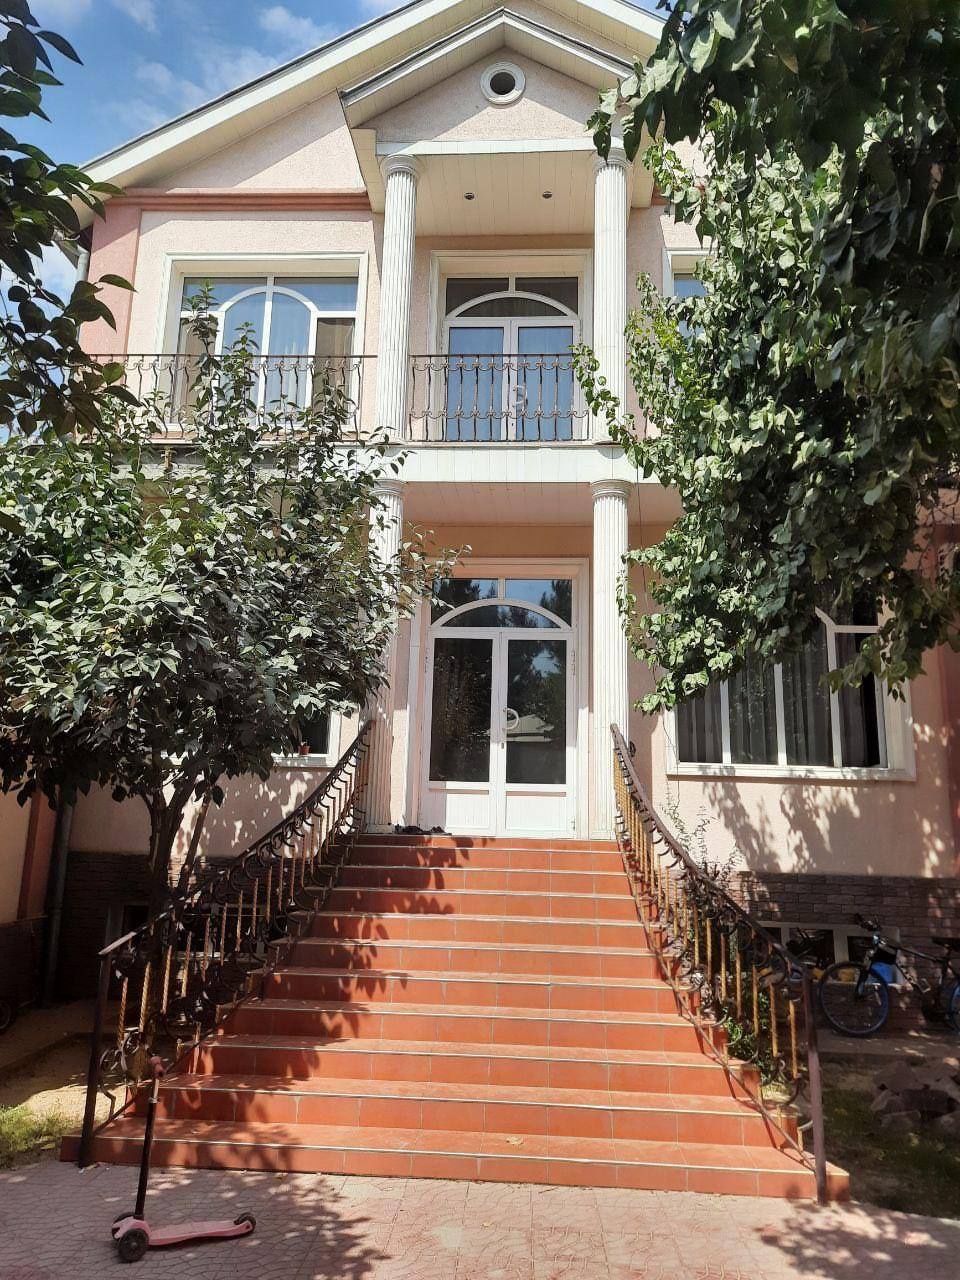 Продаётся дом в центре Ташкента ББИ